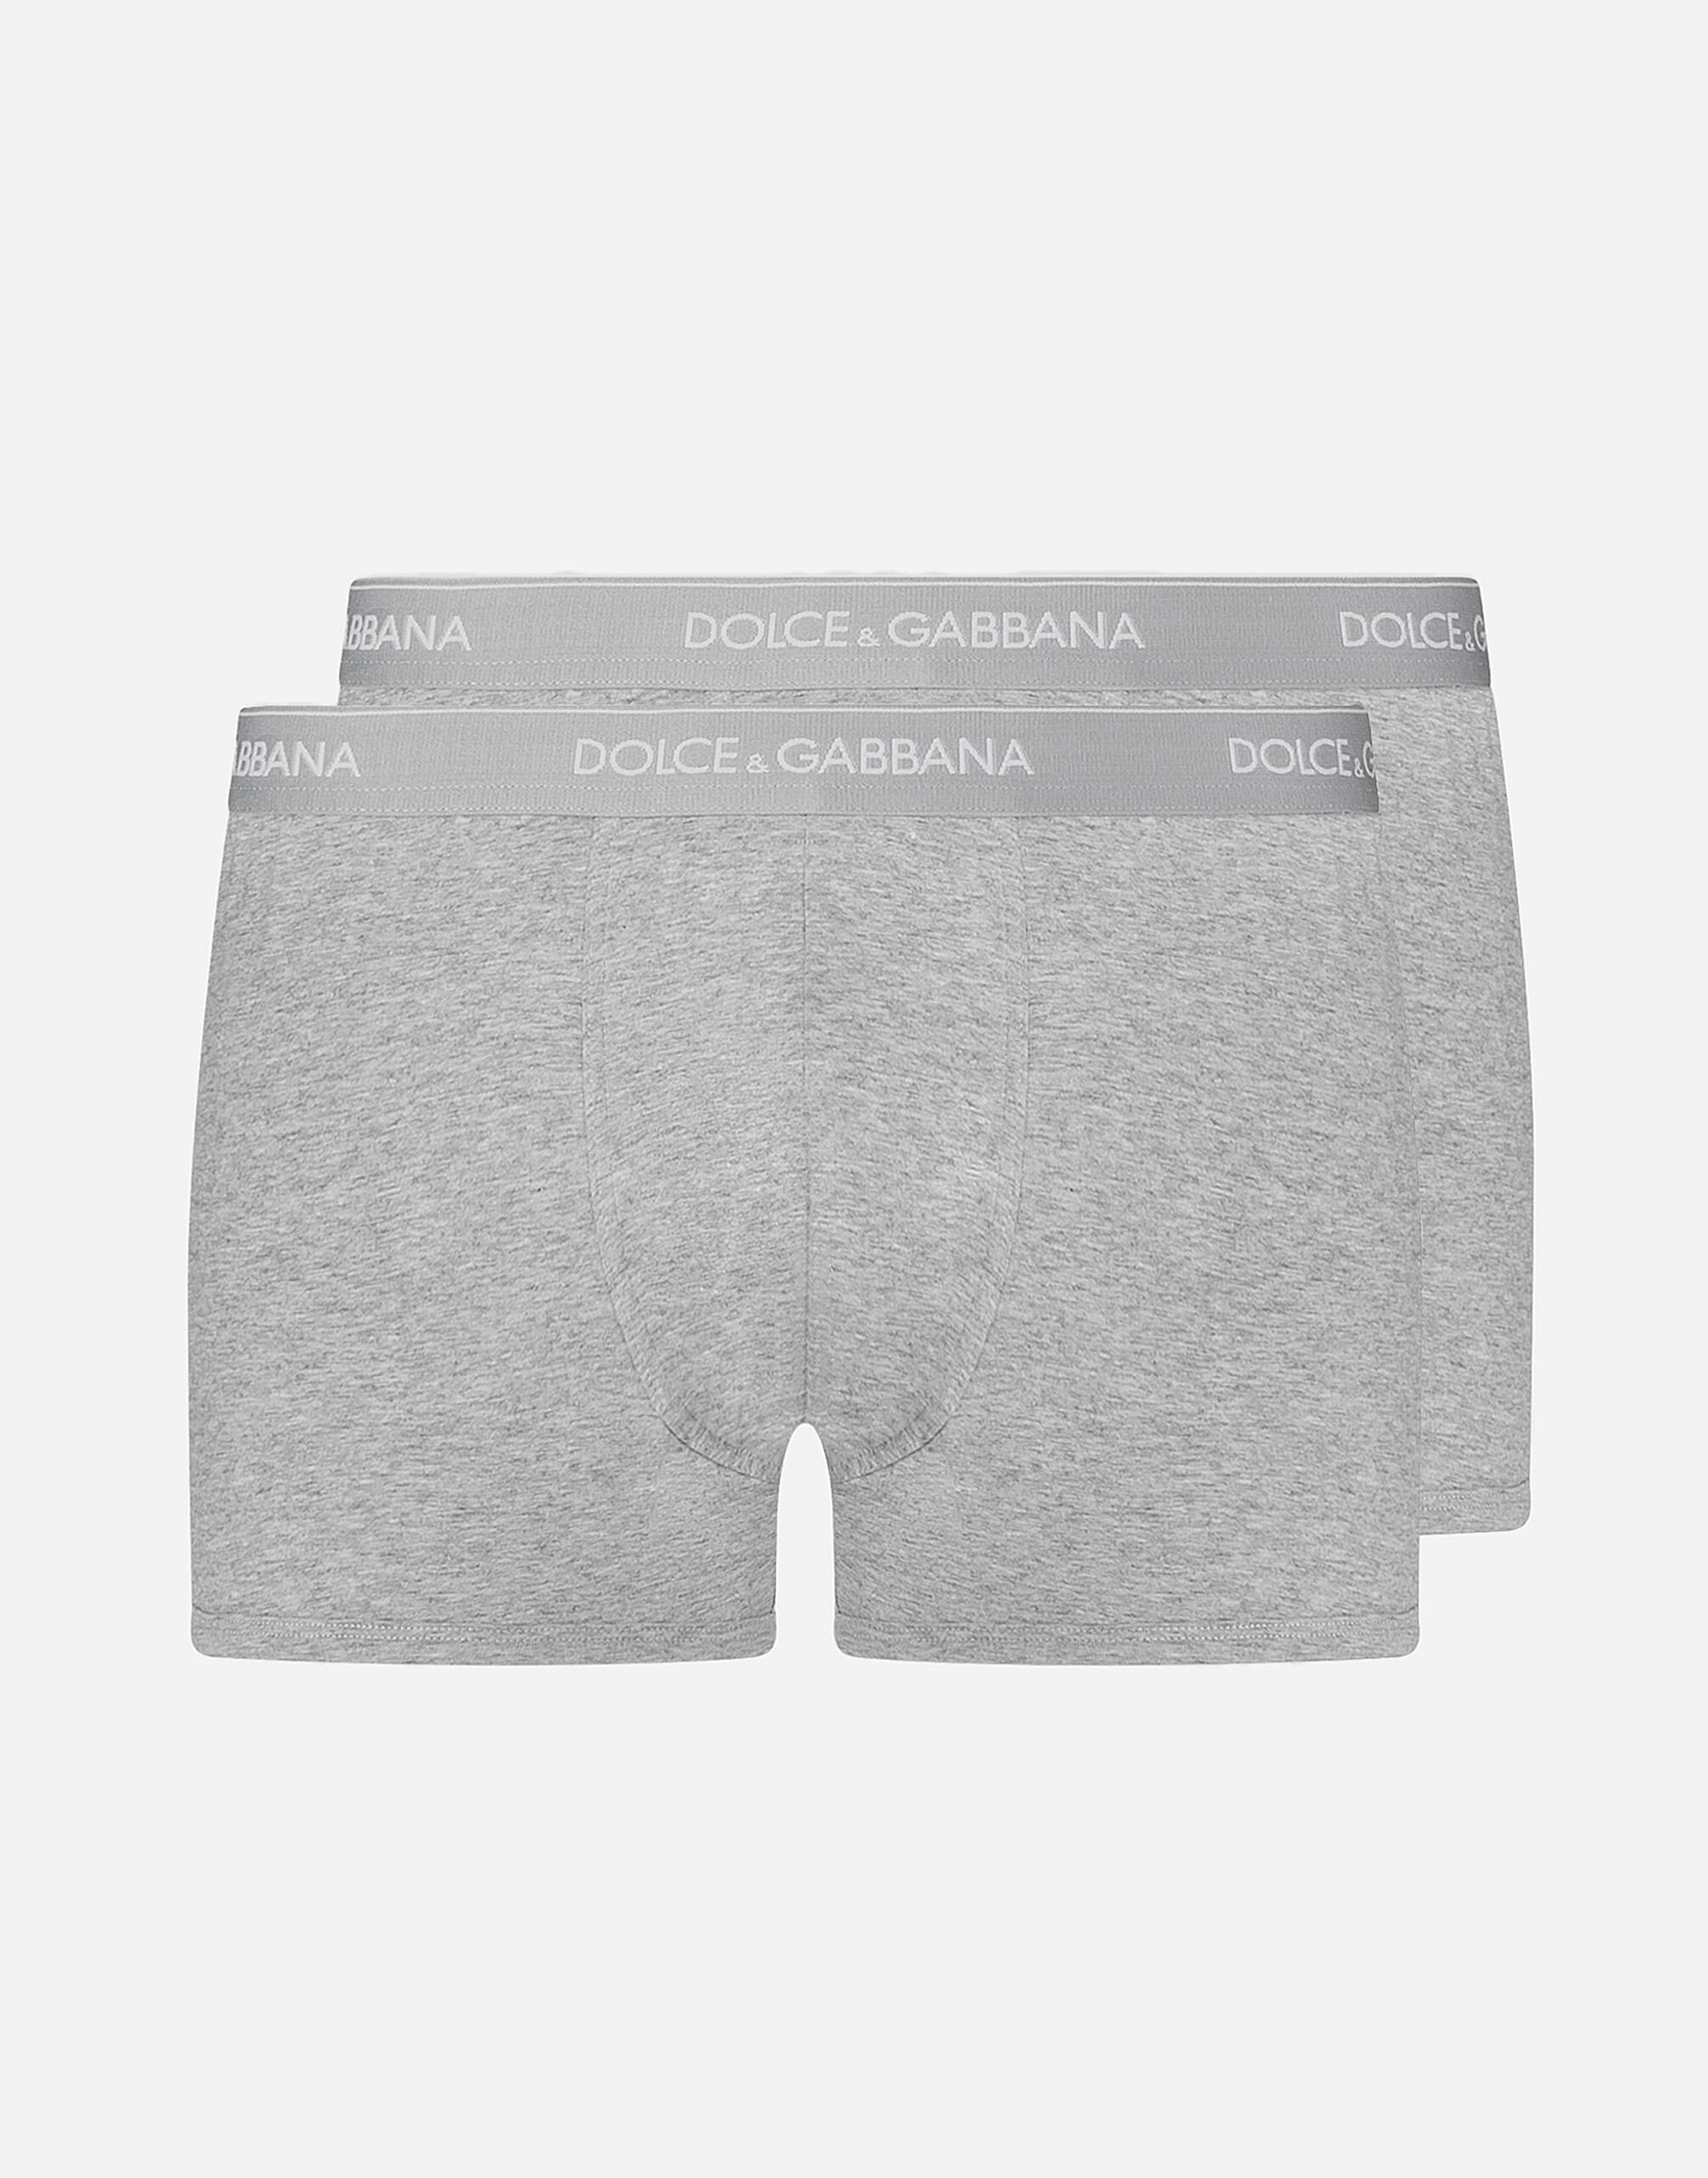 Dolce & Gabbana White Sailor Bra Panty Stretch Underwear